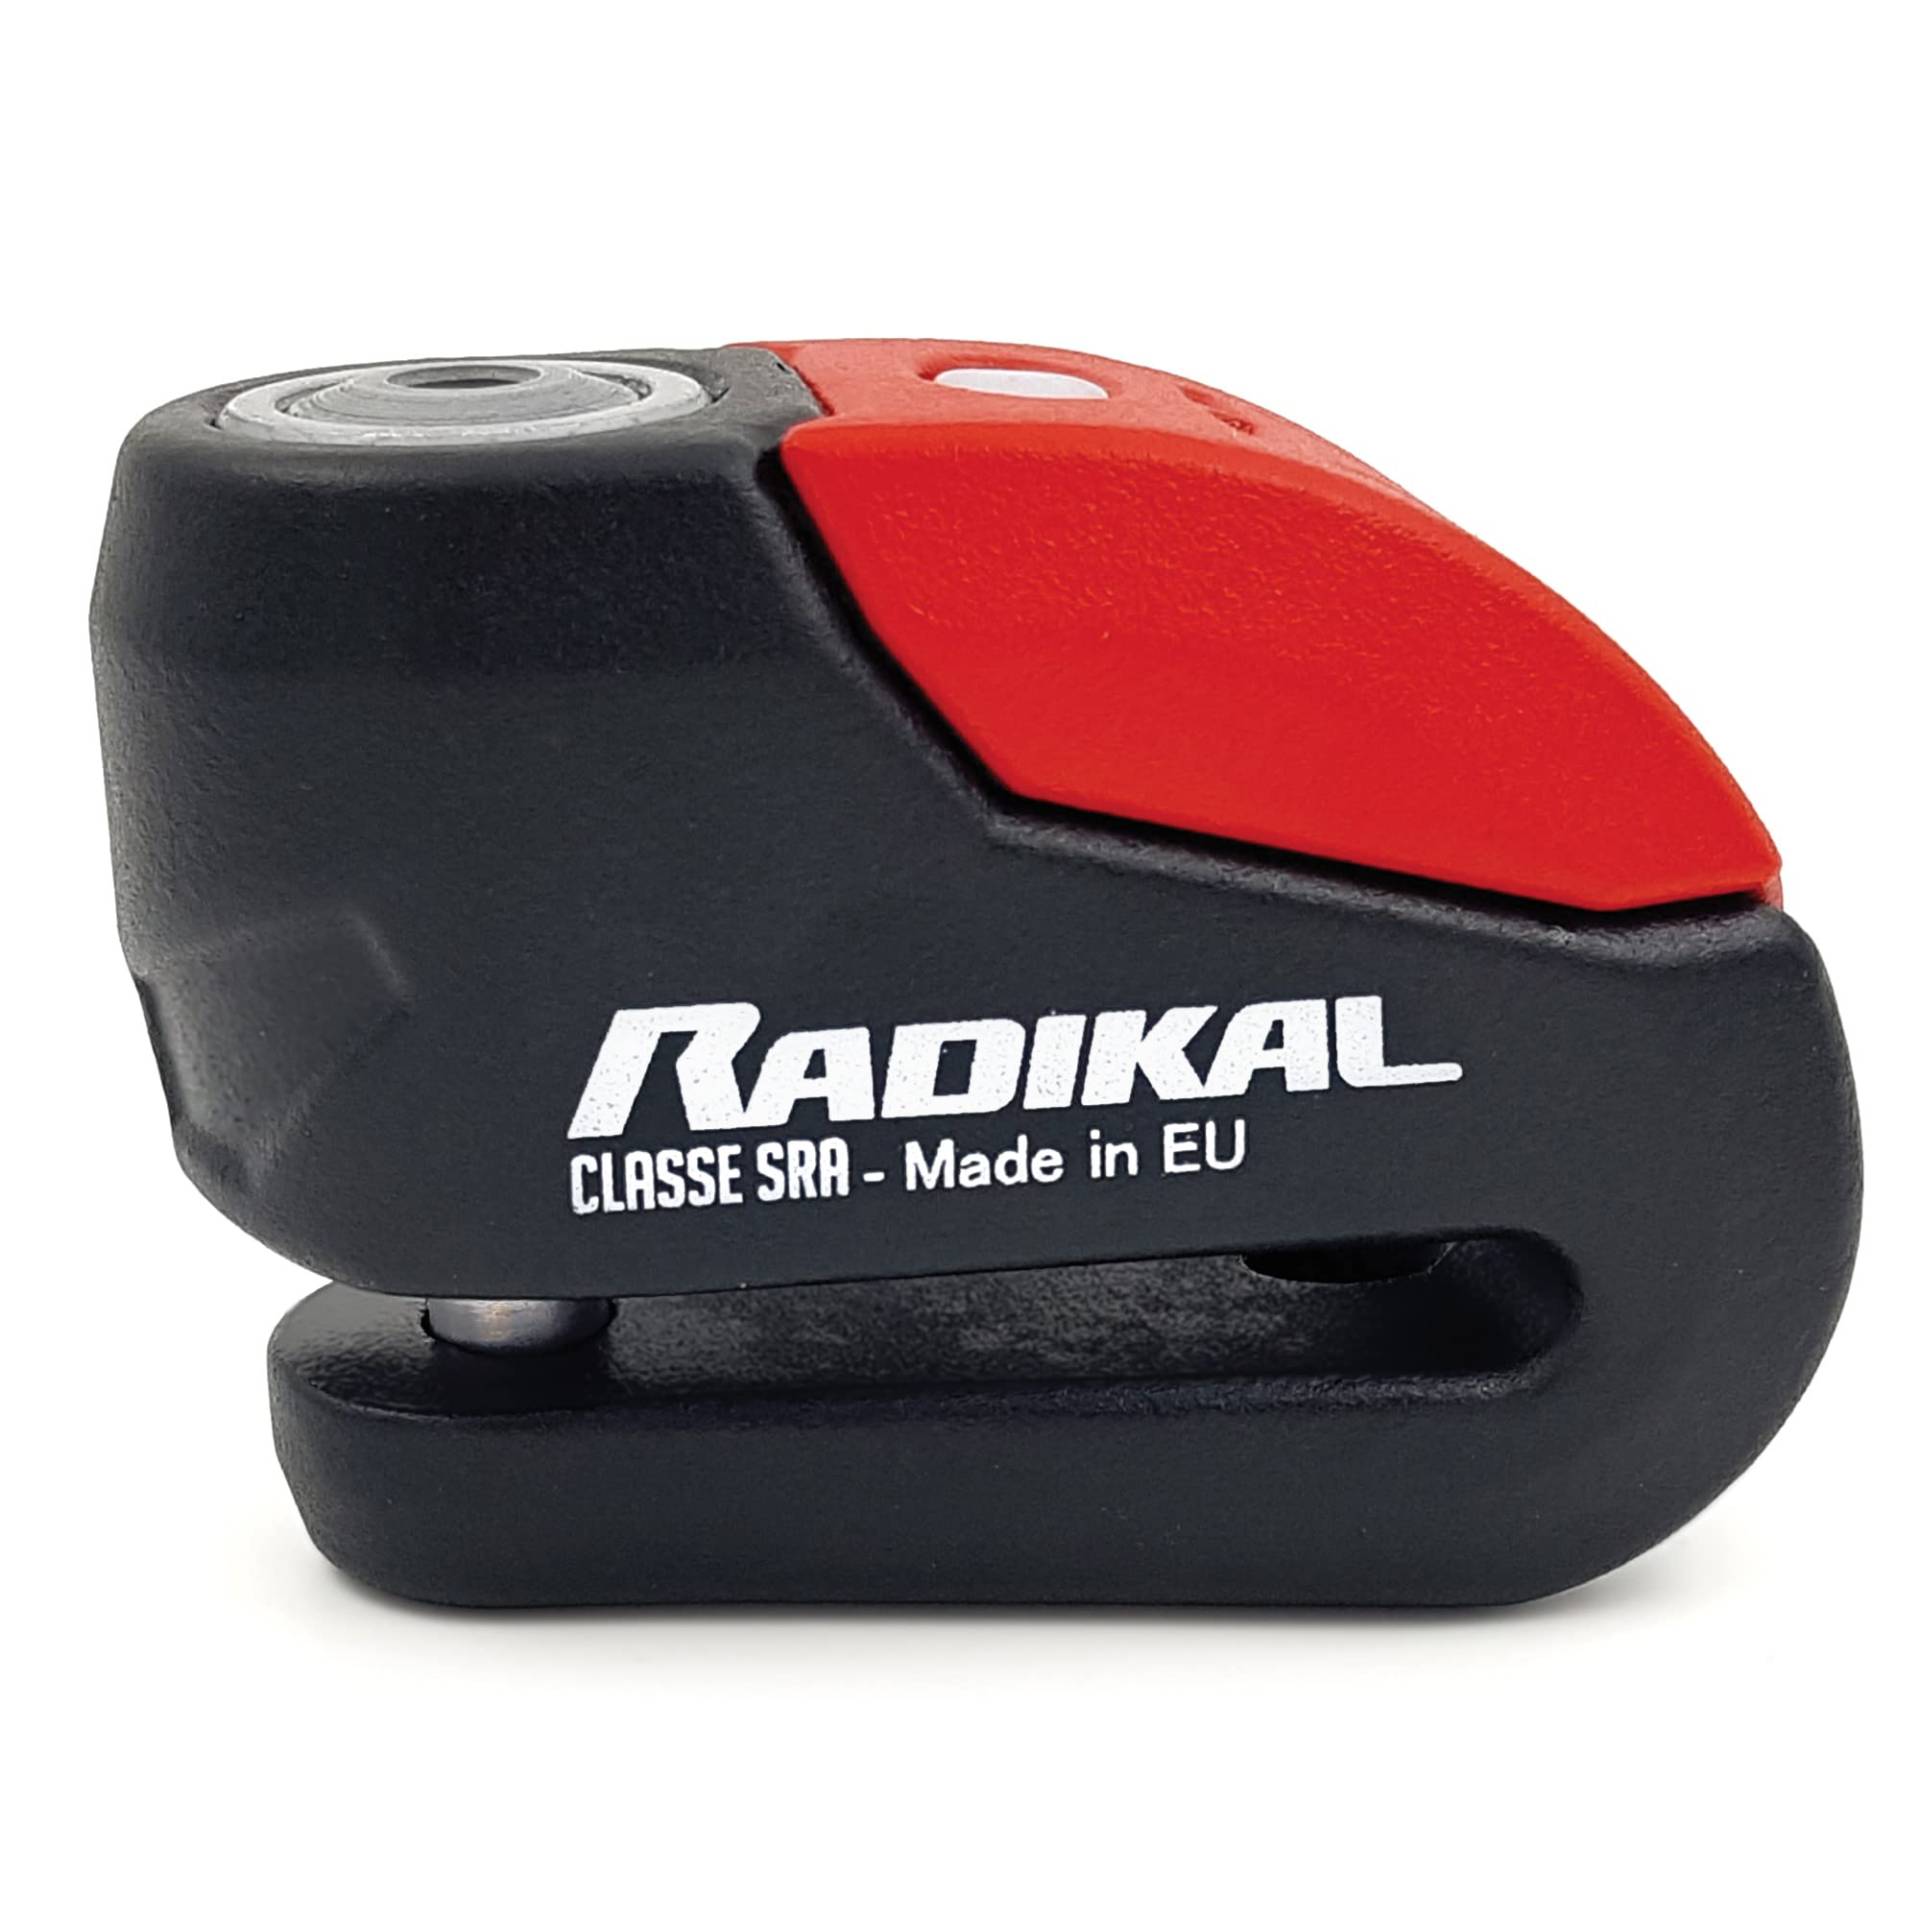 RADIKAL RK10 Zugelassenes Motorrad Bremsscheibenschloss mit Alarm, Gehärteter Hi-Tech Stahl, Doppelverriegelung SEK DISCTECH, Hochwertiges Alarmsystem mit Warnung Optionale Aktivierung, LED-Licht 10mm von RADIKAL